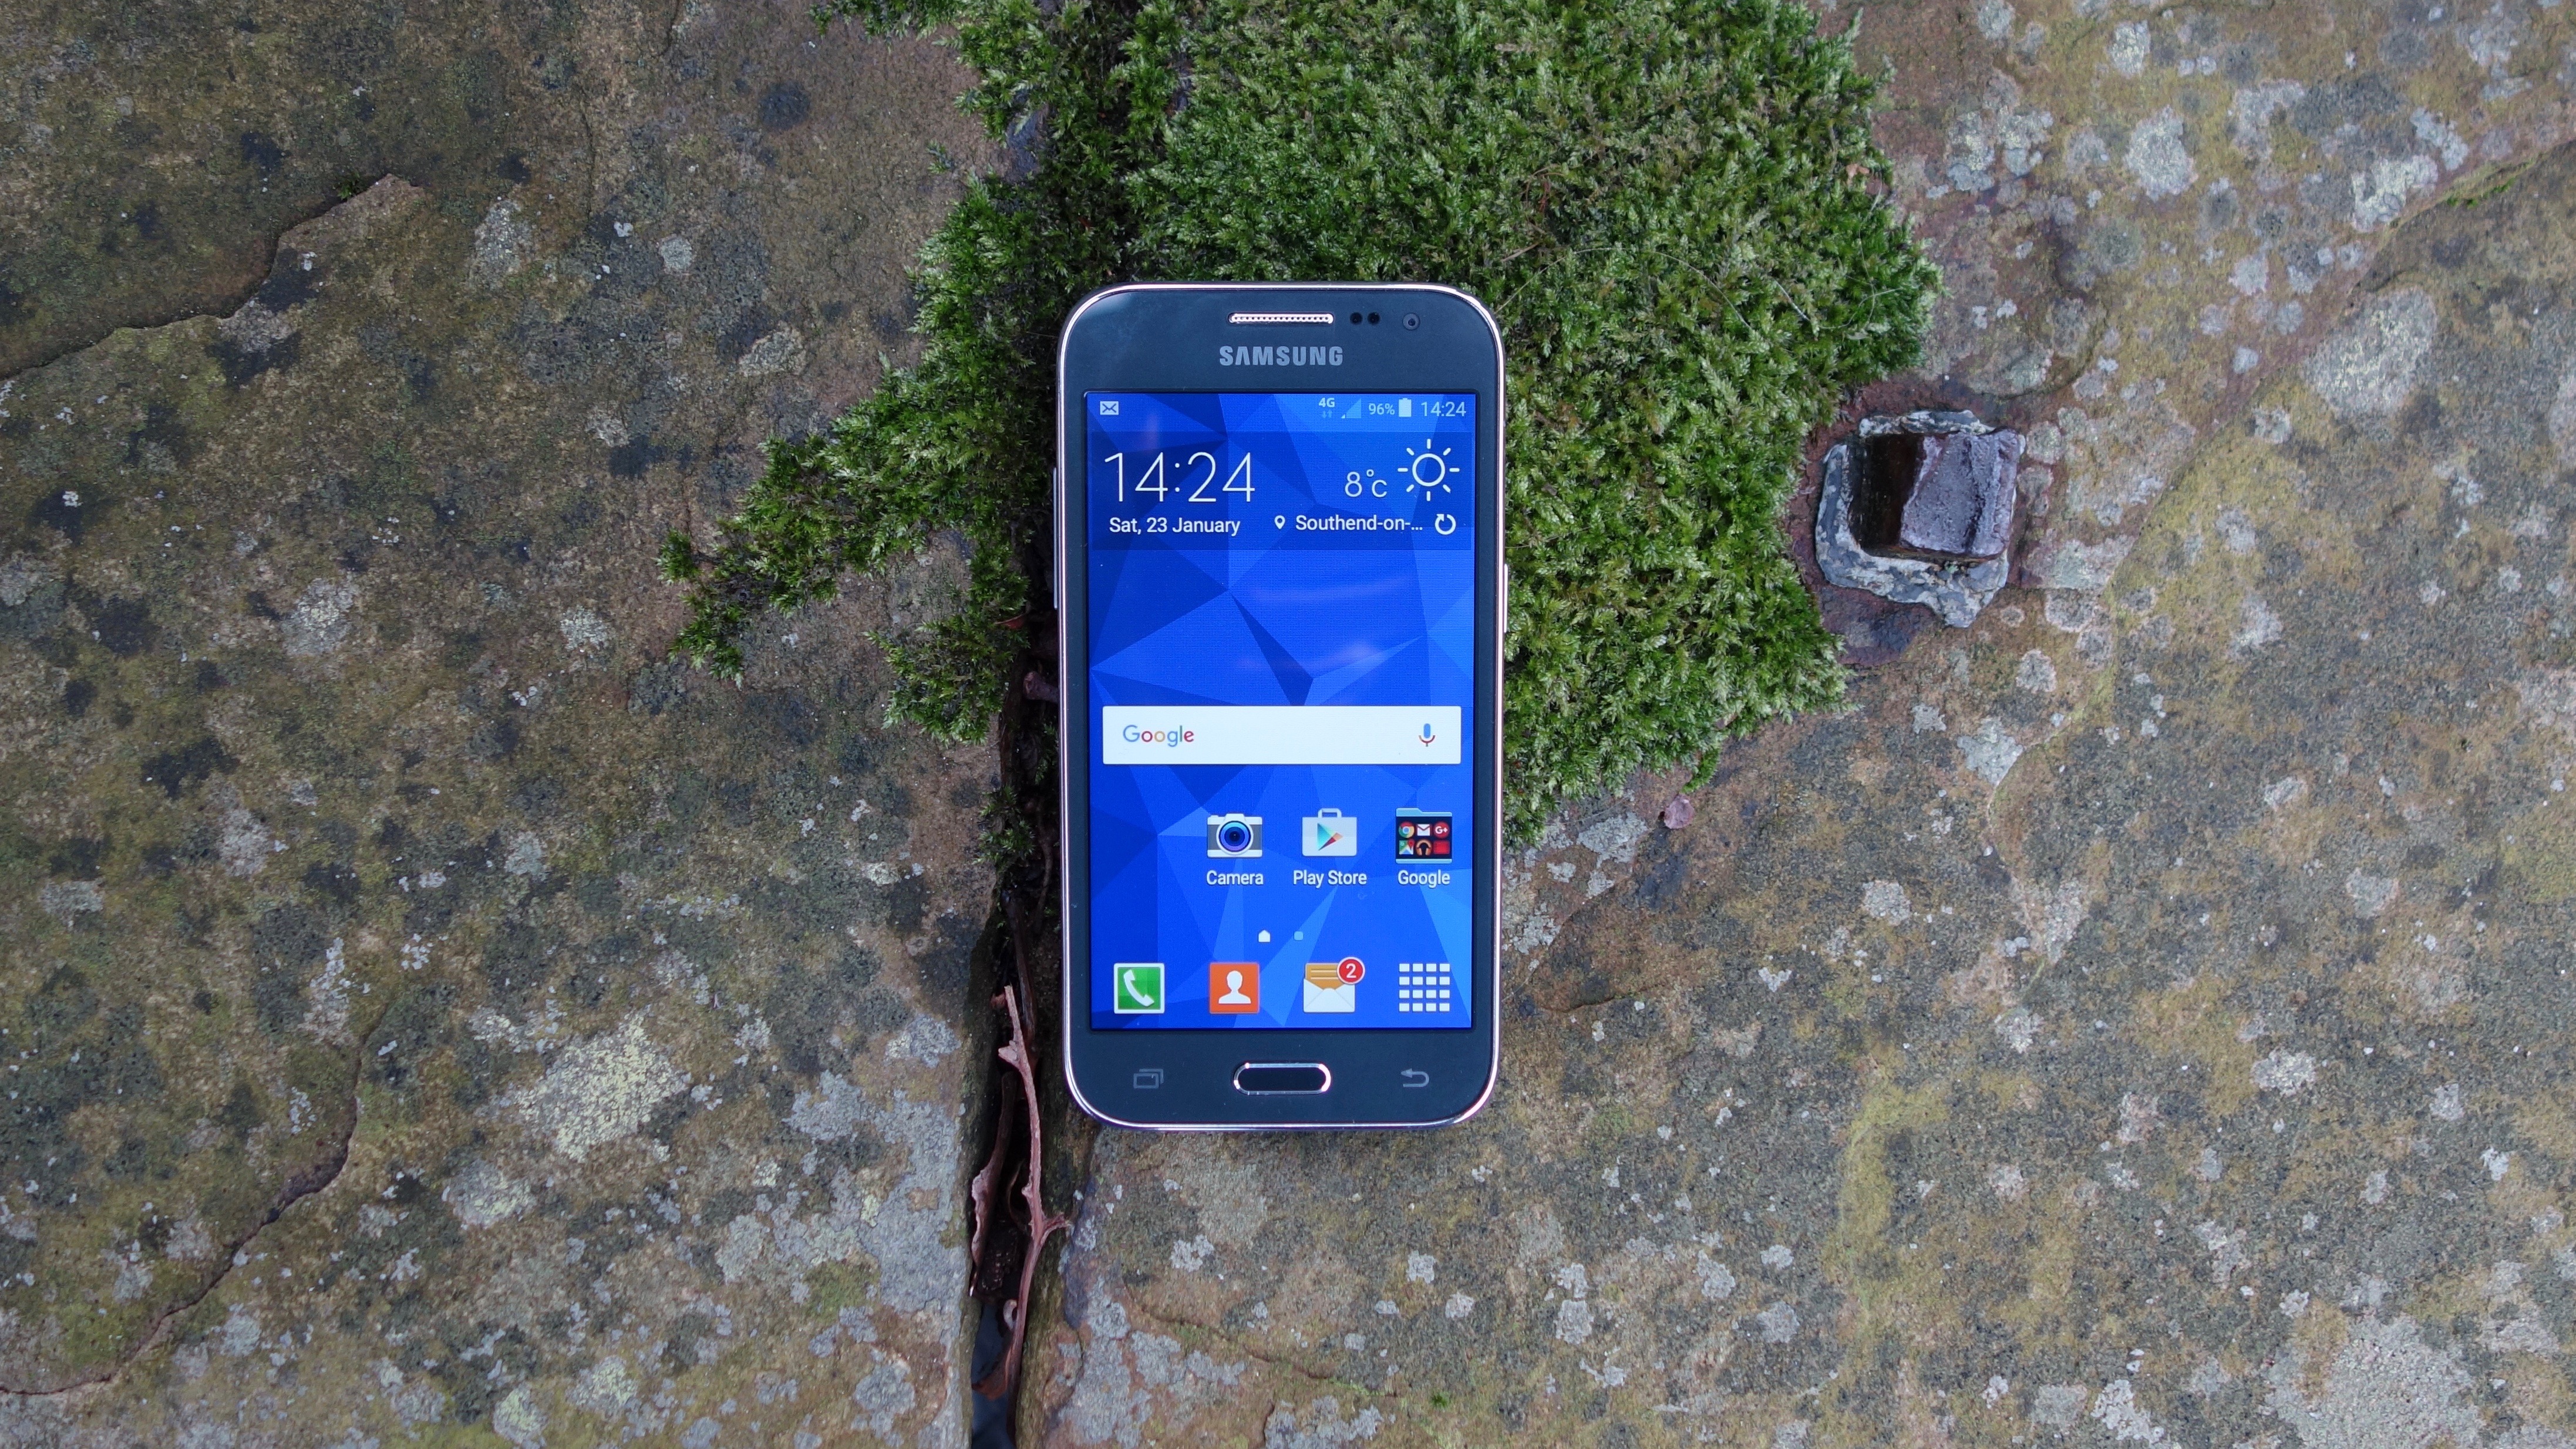 Interminable interior consenso Samsung Galaxy Core Prime review | TechRadar